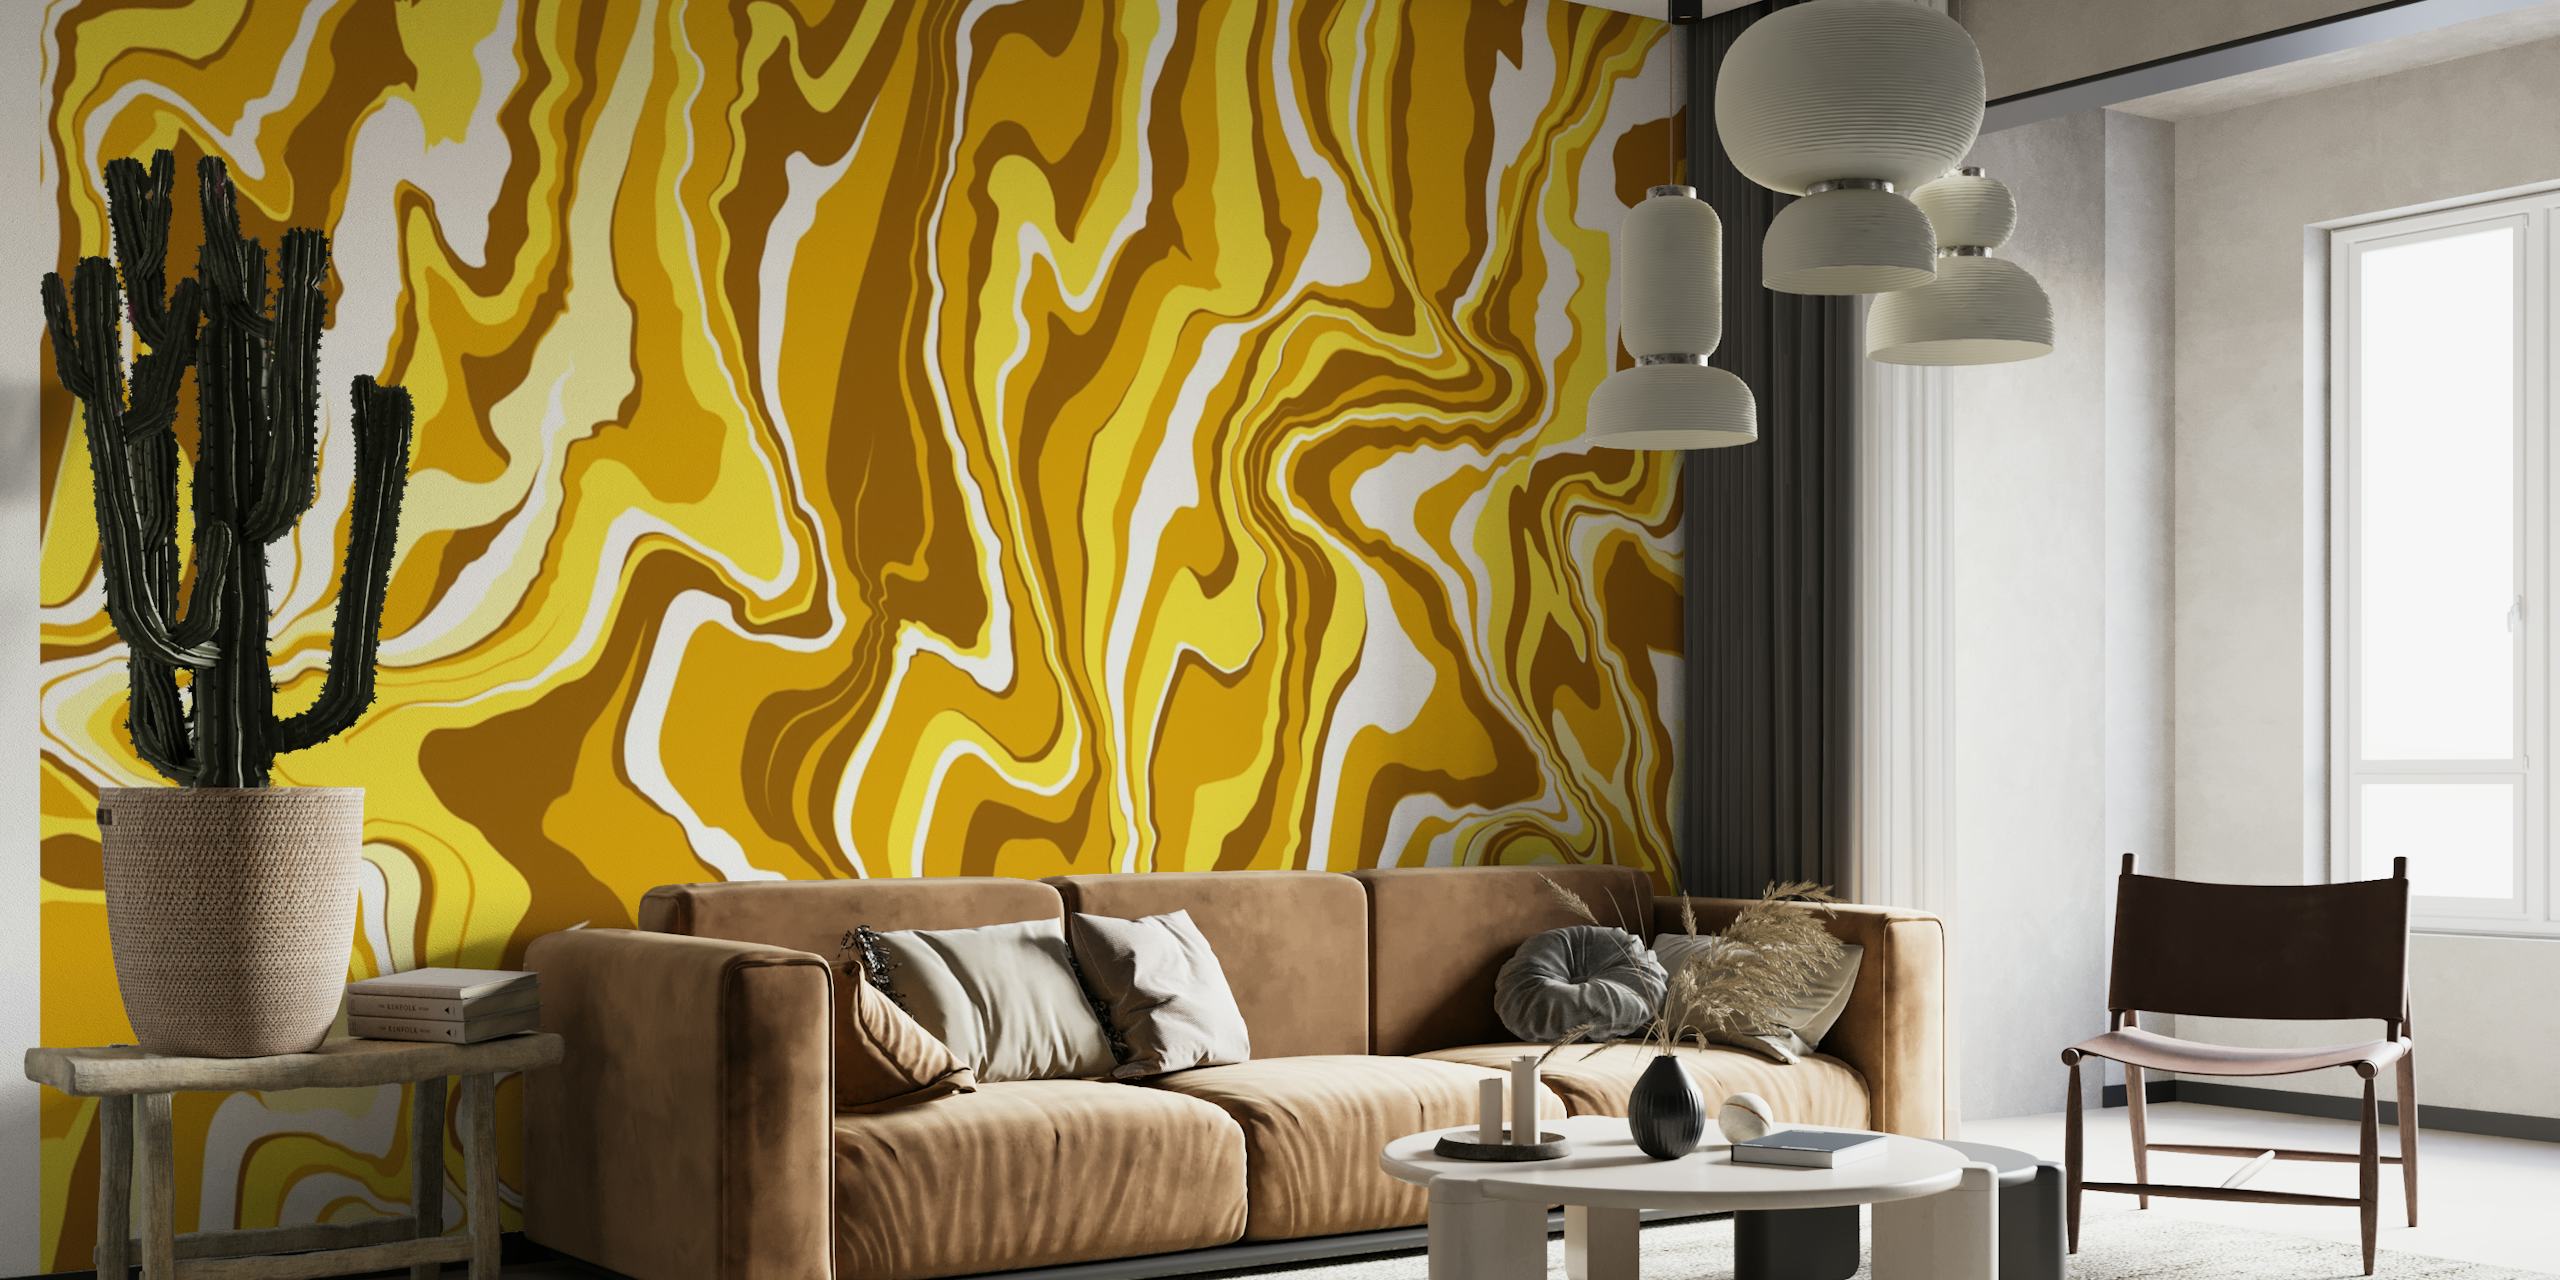 Fototapeta Fluid Art 4 ze złotymi wirami i płynnym abstrakcyjnym wzorem